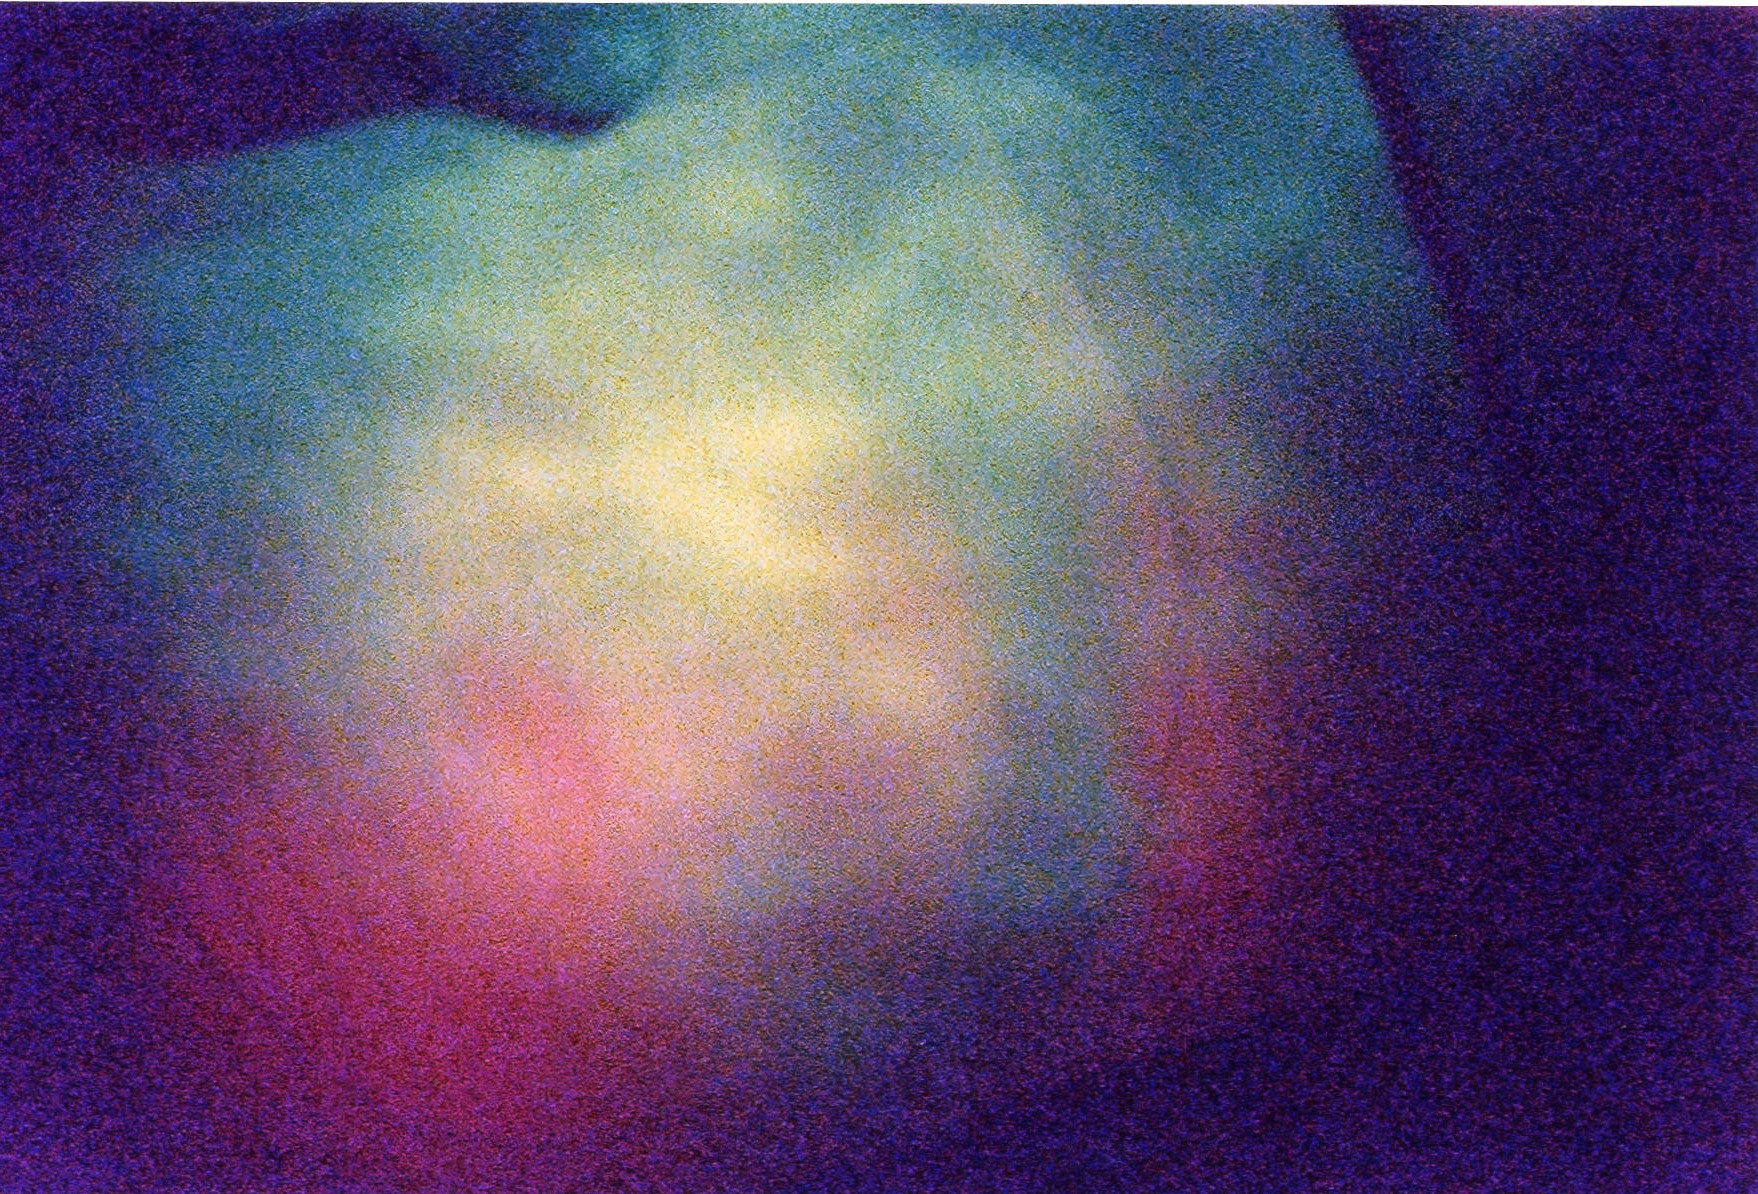 Beam diameter at 1000ft - false color 1 sec exposure